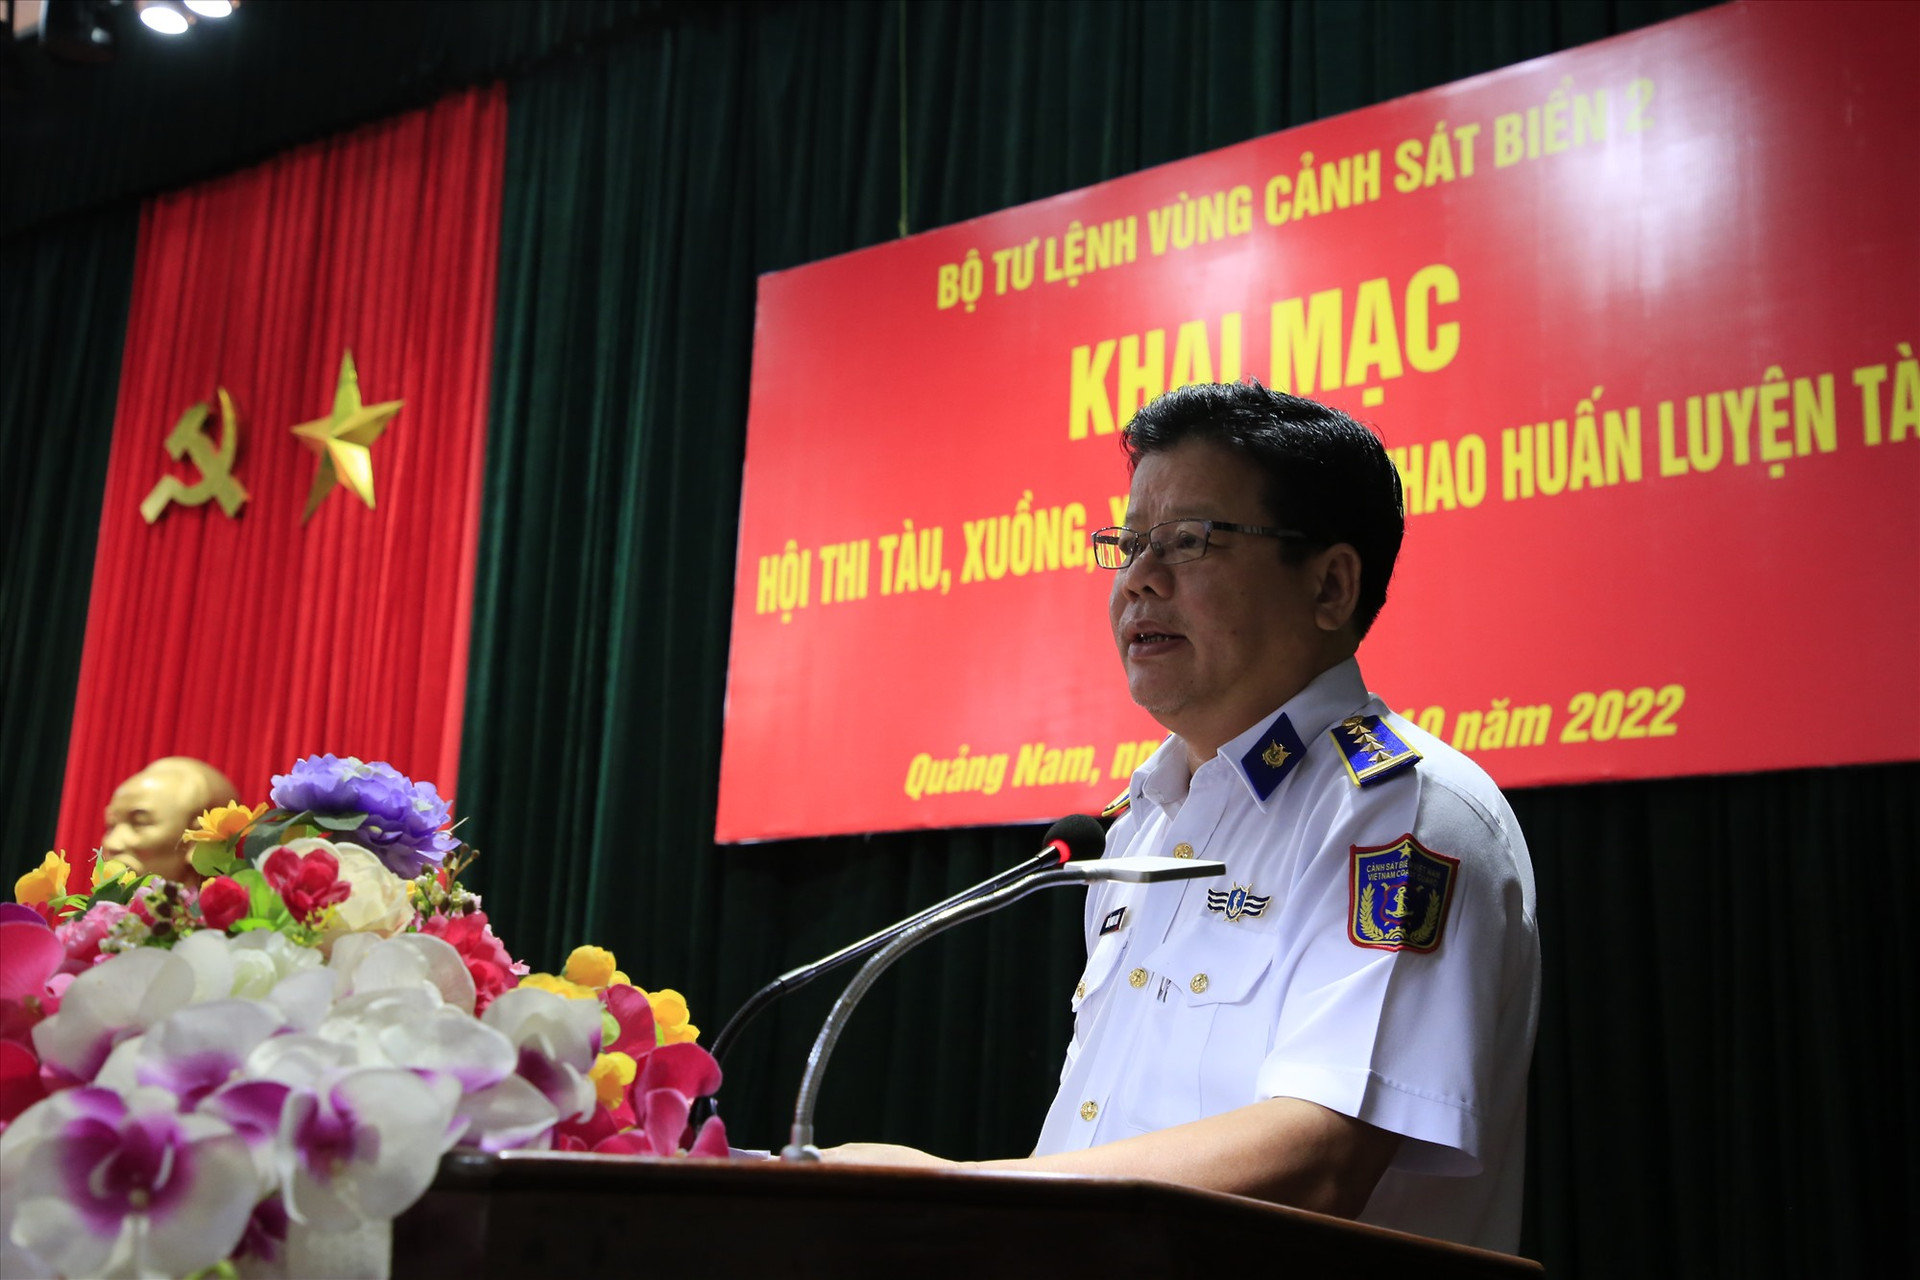 Đại tá Trần Quang Tuấn - Tư lệnh Vùng Cảnh sát biển 2 phát biểu khai mạc hội thi. Ảnh: T.C